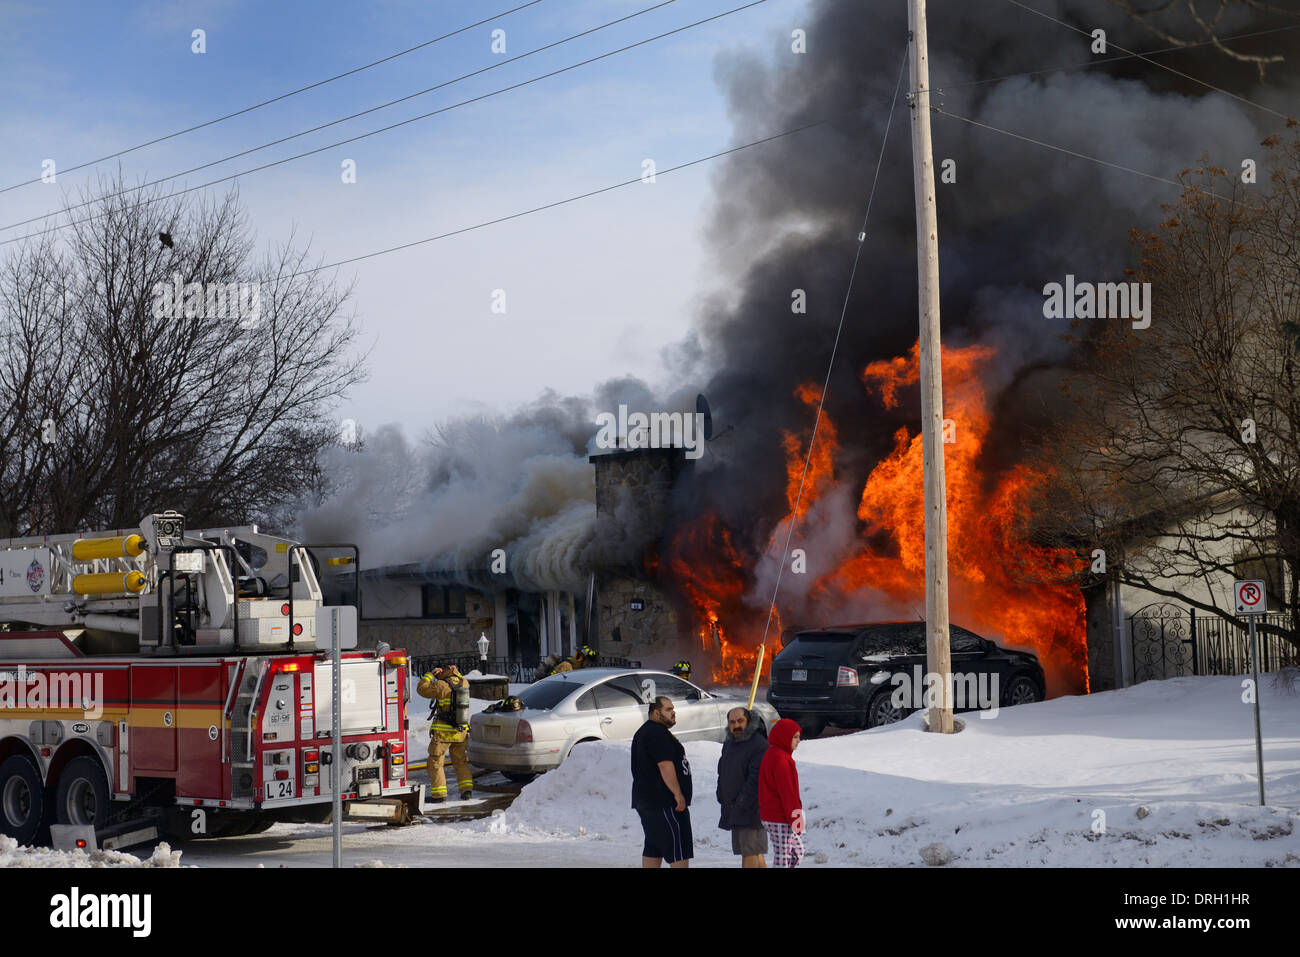 Résidents hors de vêtements de nuit en hiver avec de la neige alors que house va en flammes avec des pompiers pulvériser de l'eau sur le feu à ottawa Banque D'Images